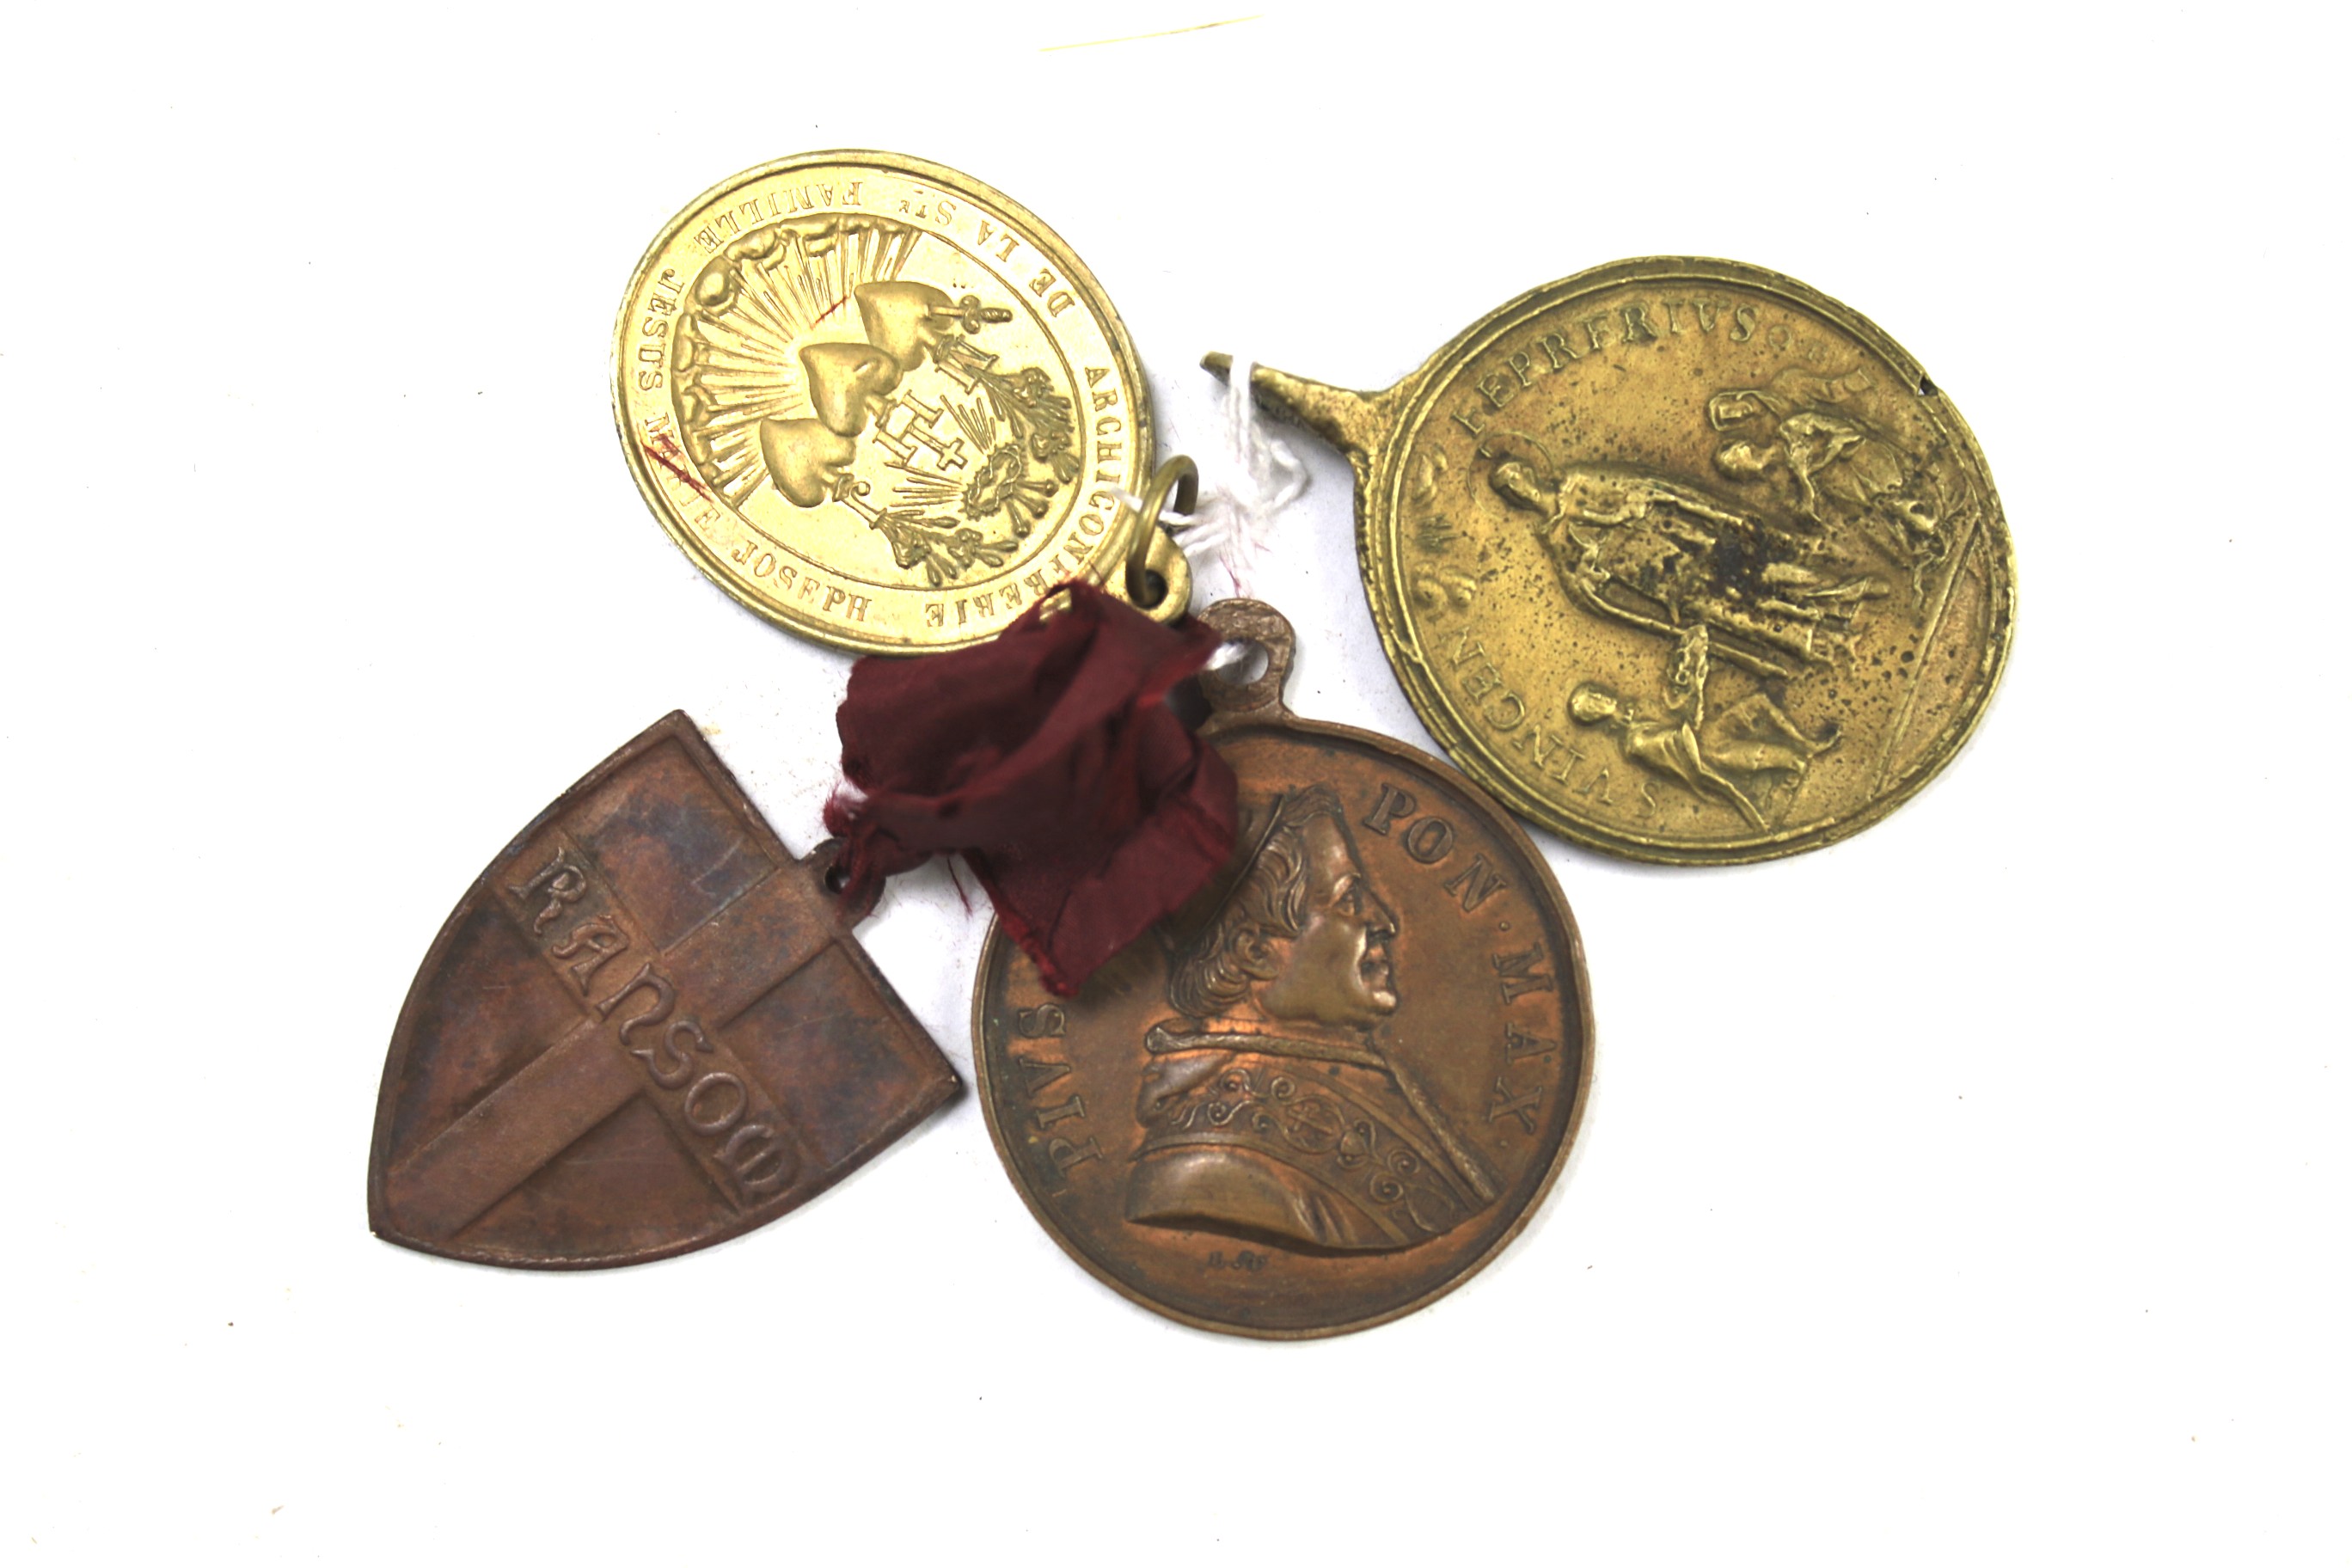 Four unusual pilgrim medals.